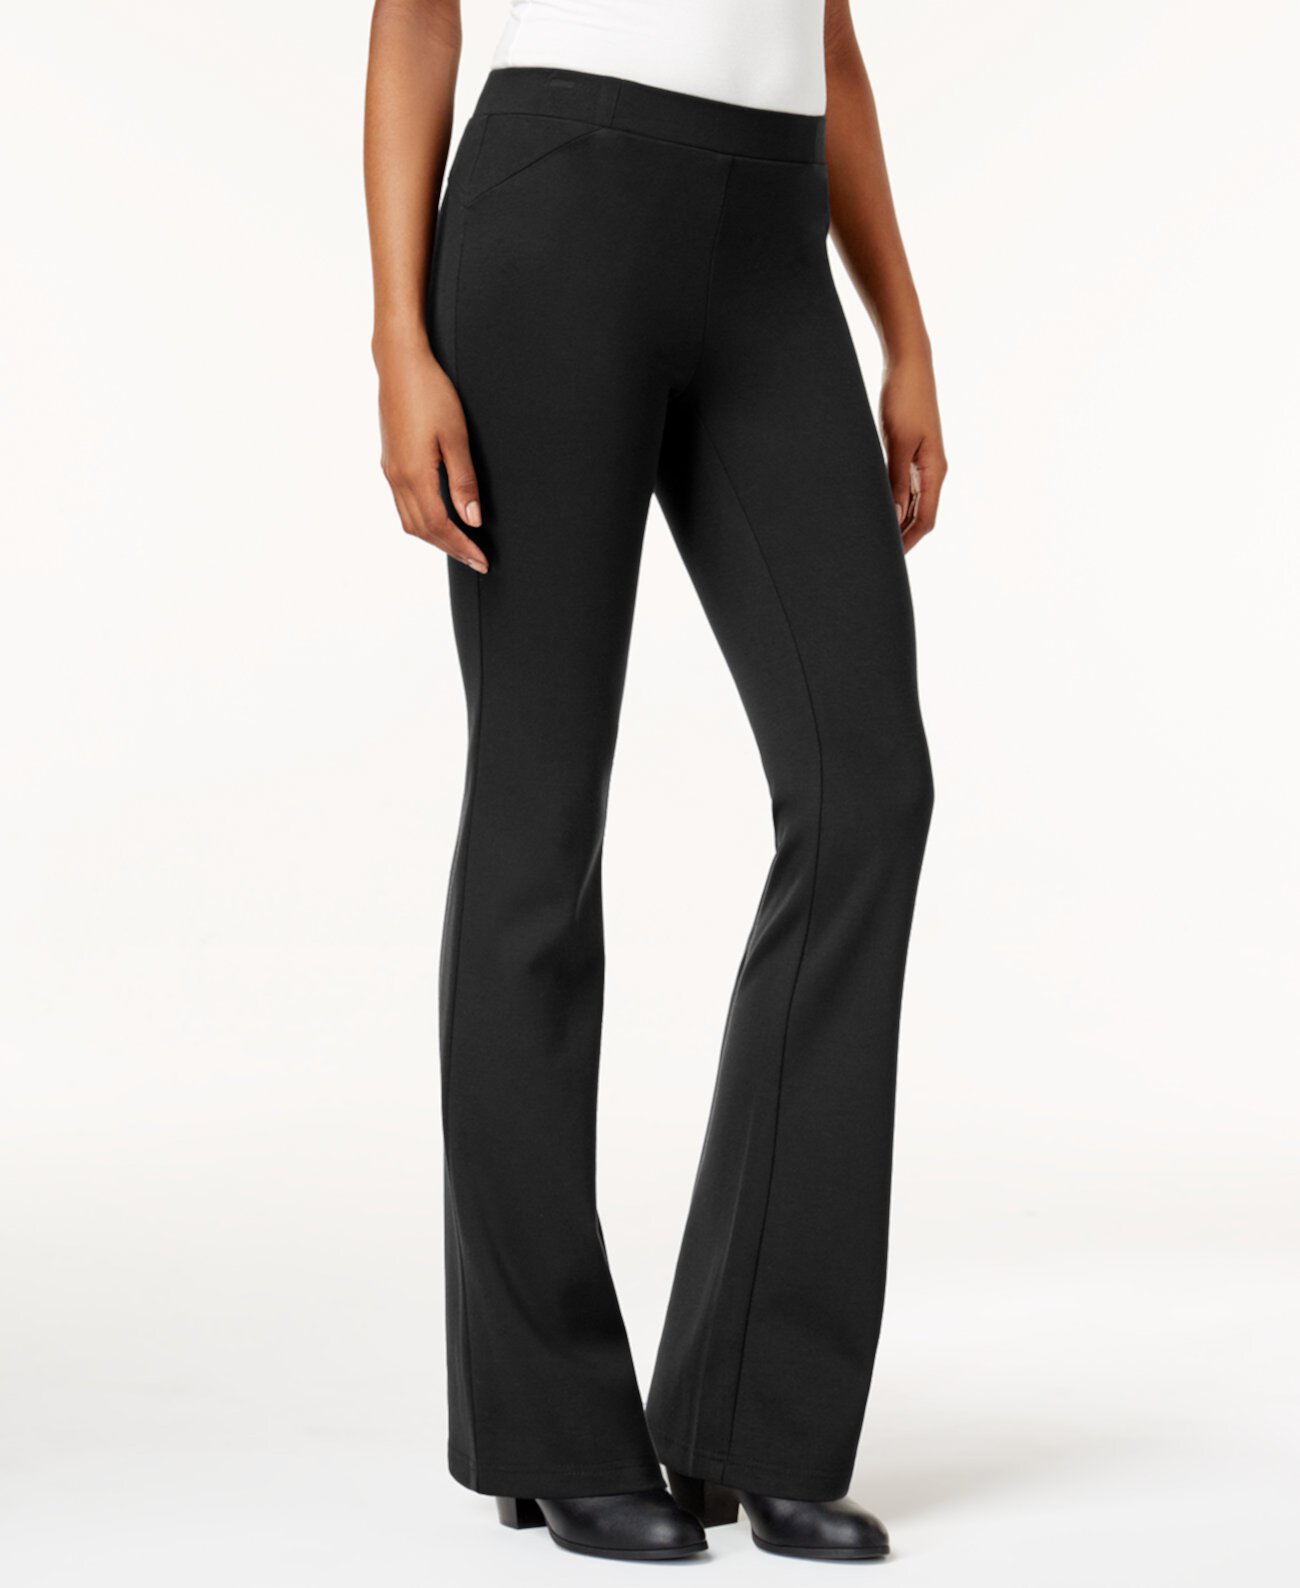 Миниатюрные брюки Bootcut большого размера, созданные для Macy's Style & Co